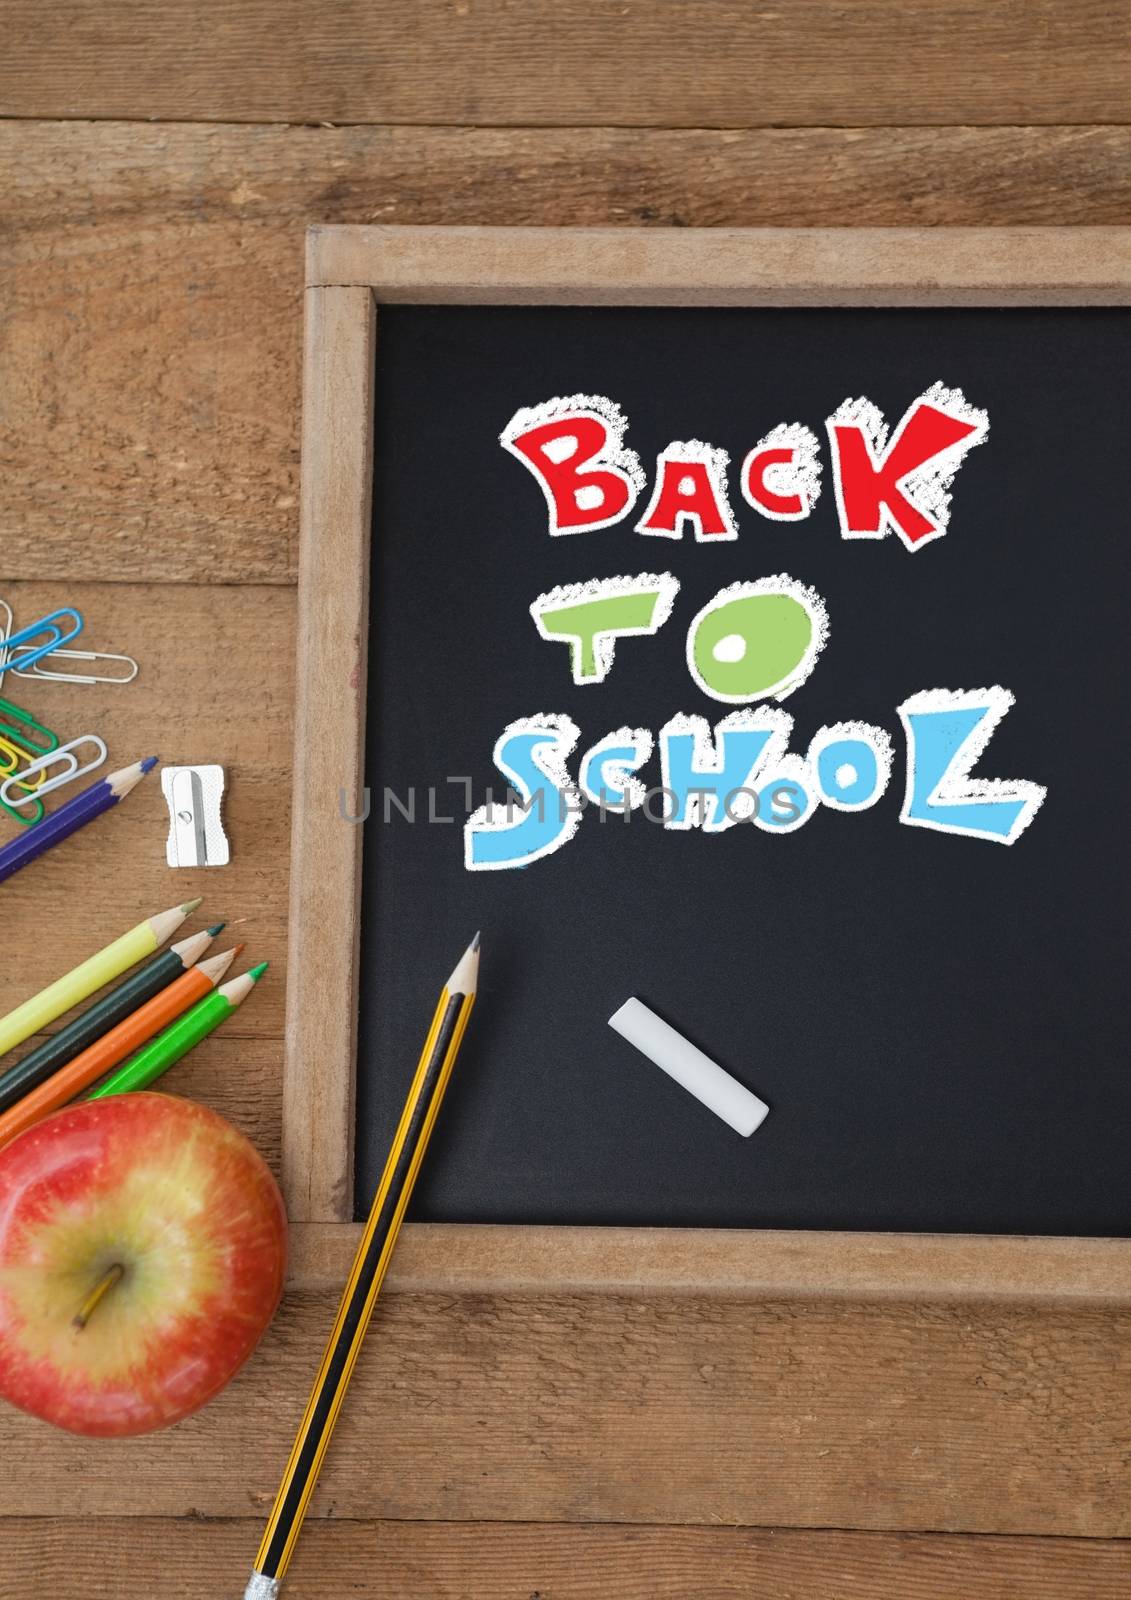 Back to school education writing on blackboard for school by Wavebreakmedia